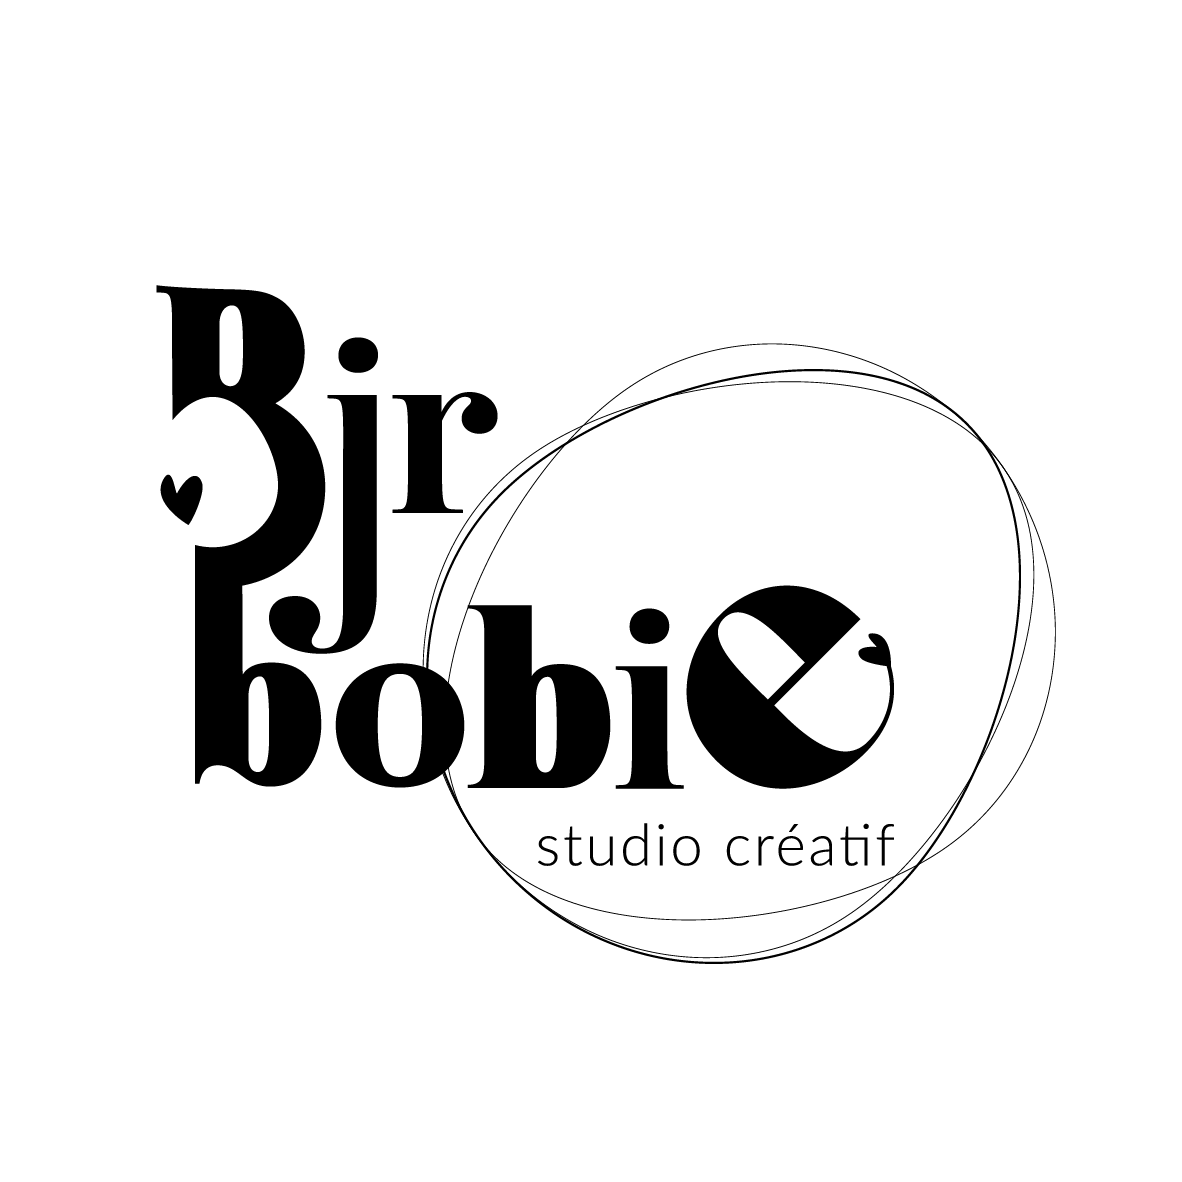 Bonjour Bobie studio créatif à votre écoute